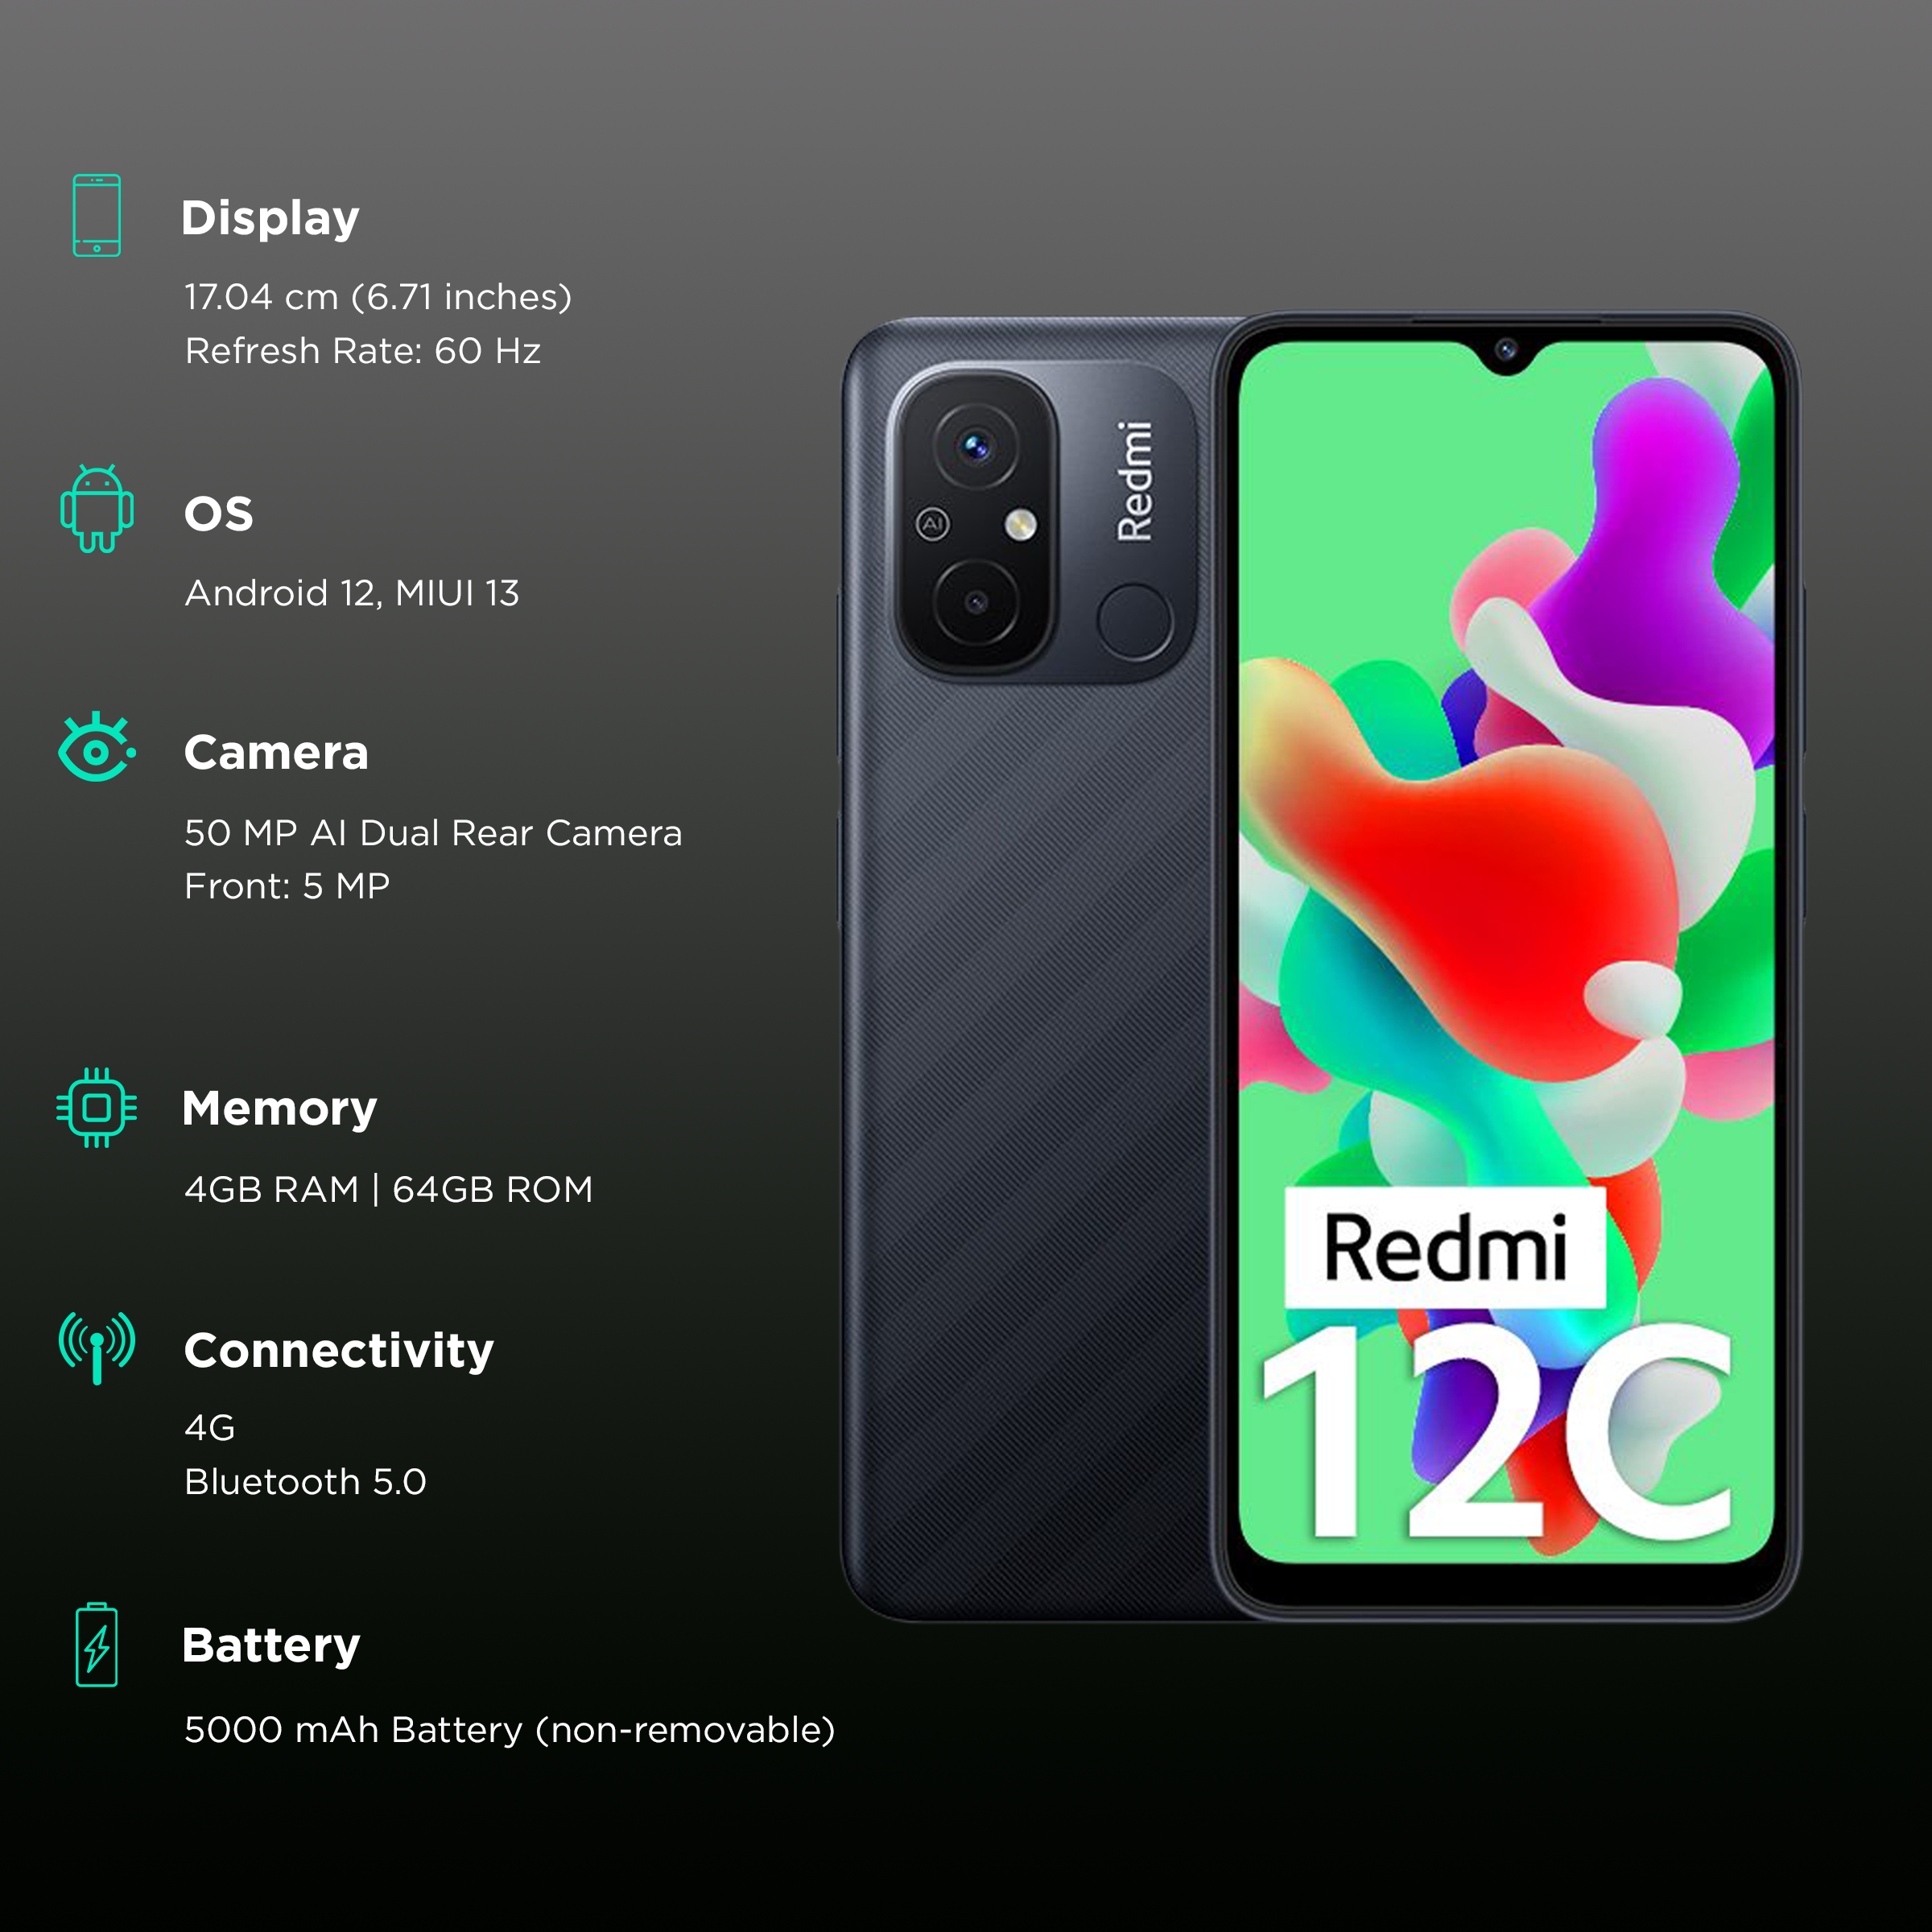 Xiaomi Redmi 12C Dual SIM 64 GB mint green 3 GB RAM